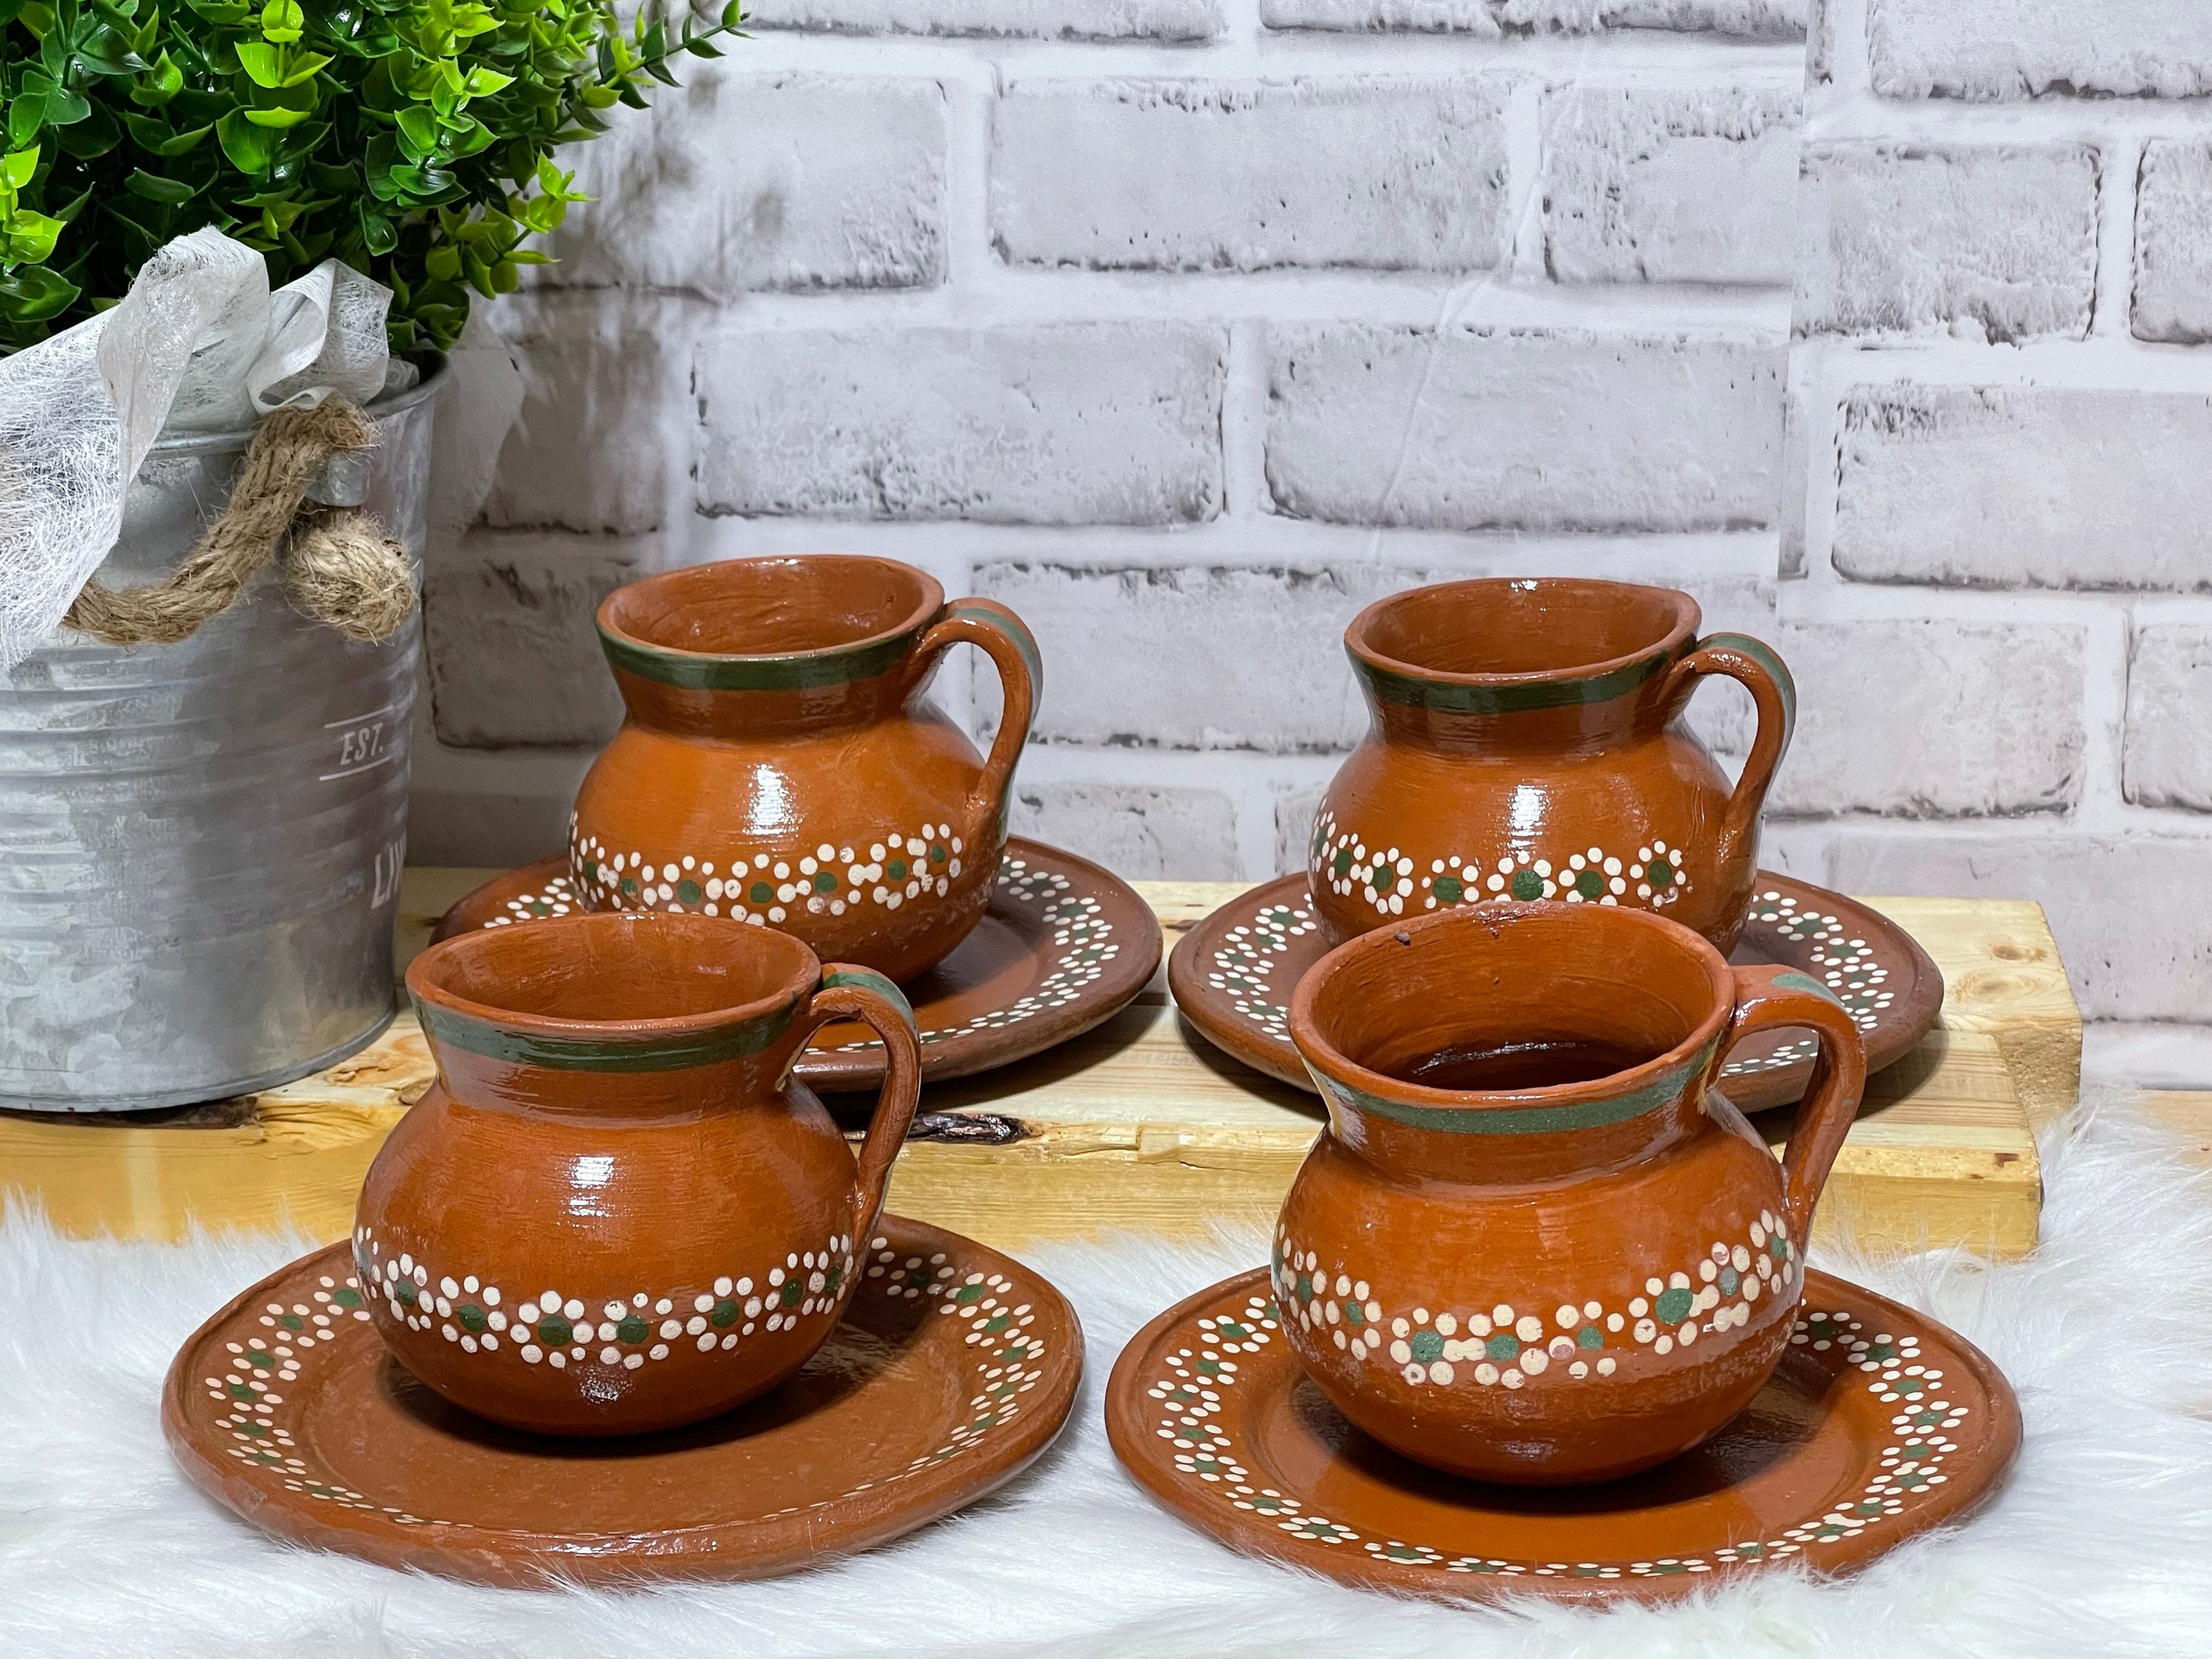 Platos de barro vajillas ollas souvenirs en el mercado artesanal alfarería  cerámica eslava arcilla ware